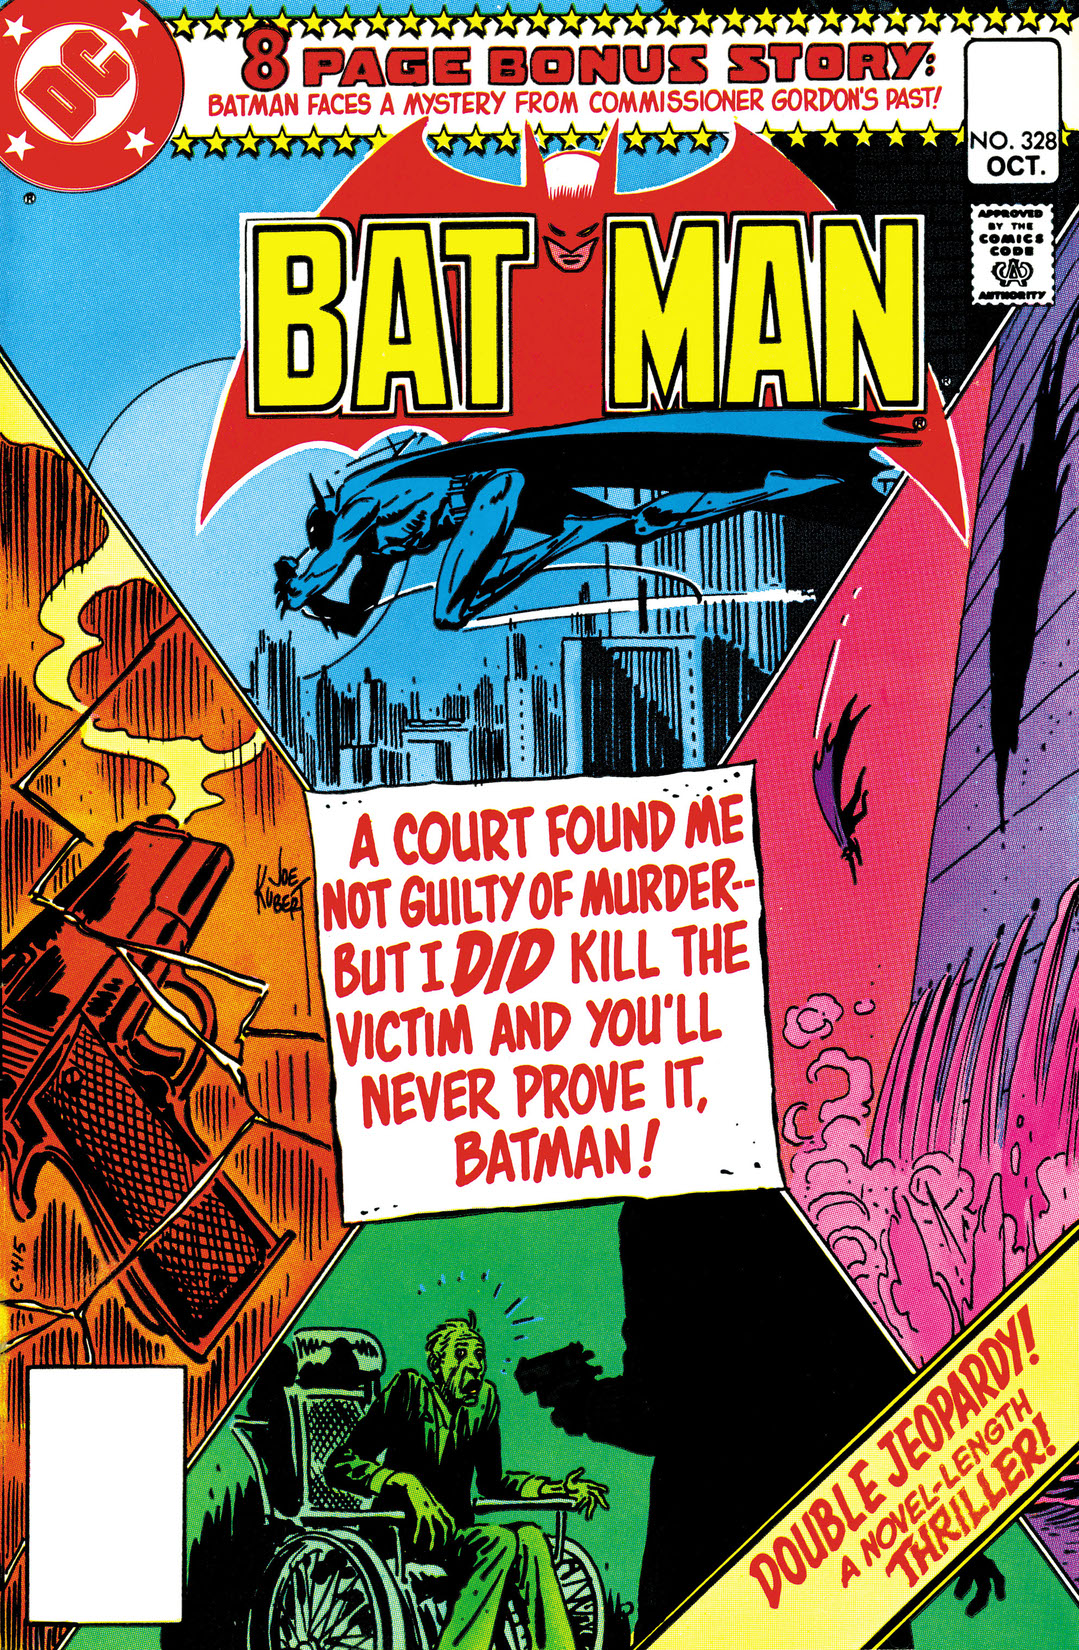 Batman (1940-) #328 preview images